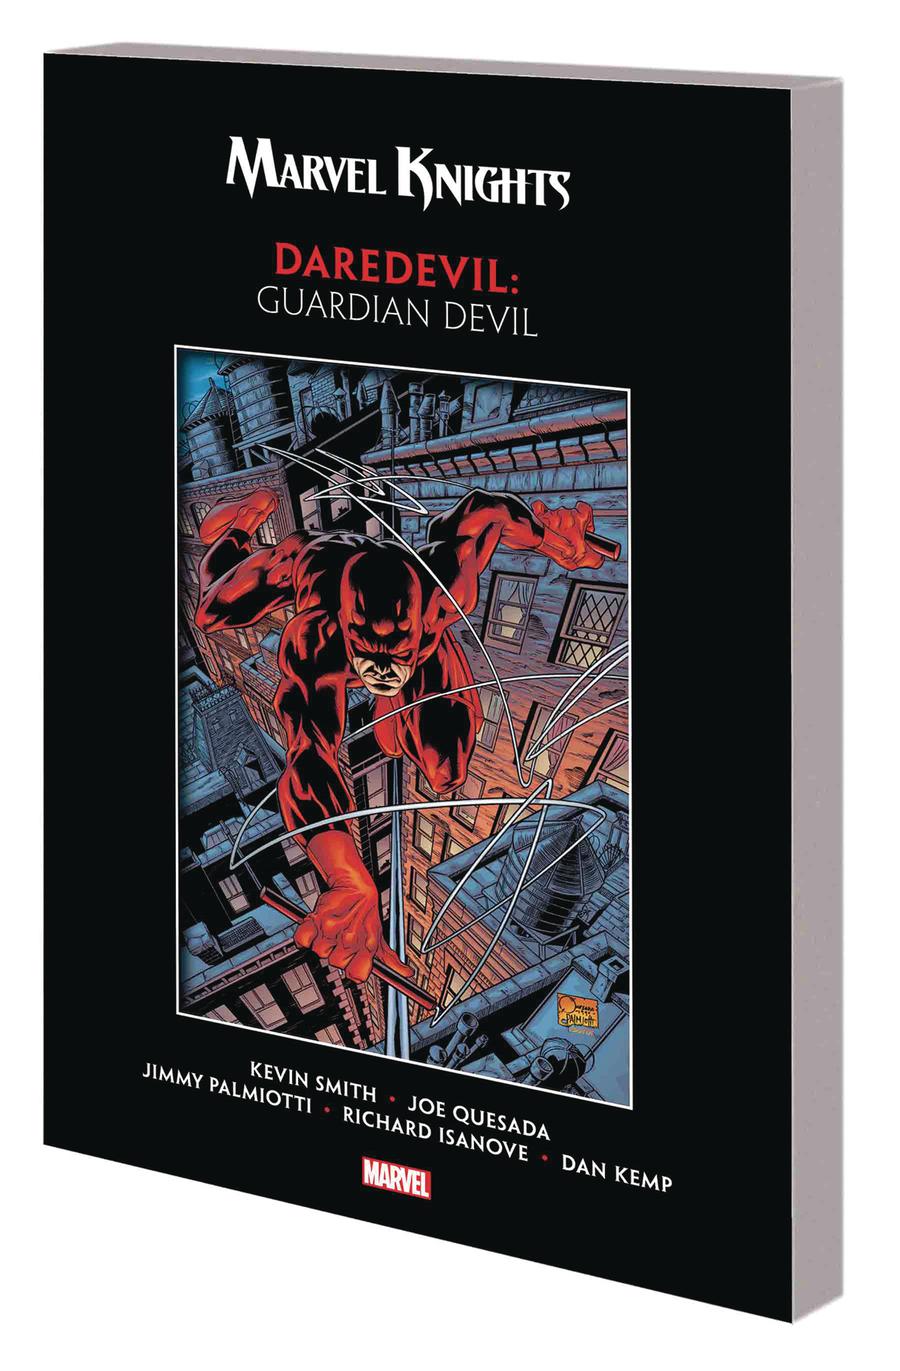 Daredevil 1999 Spider-Man No.8 Vol.2 Kevin Smith & Joe Quesada